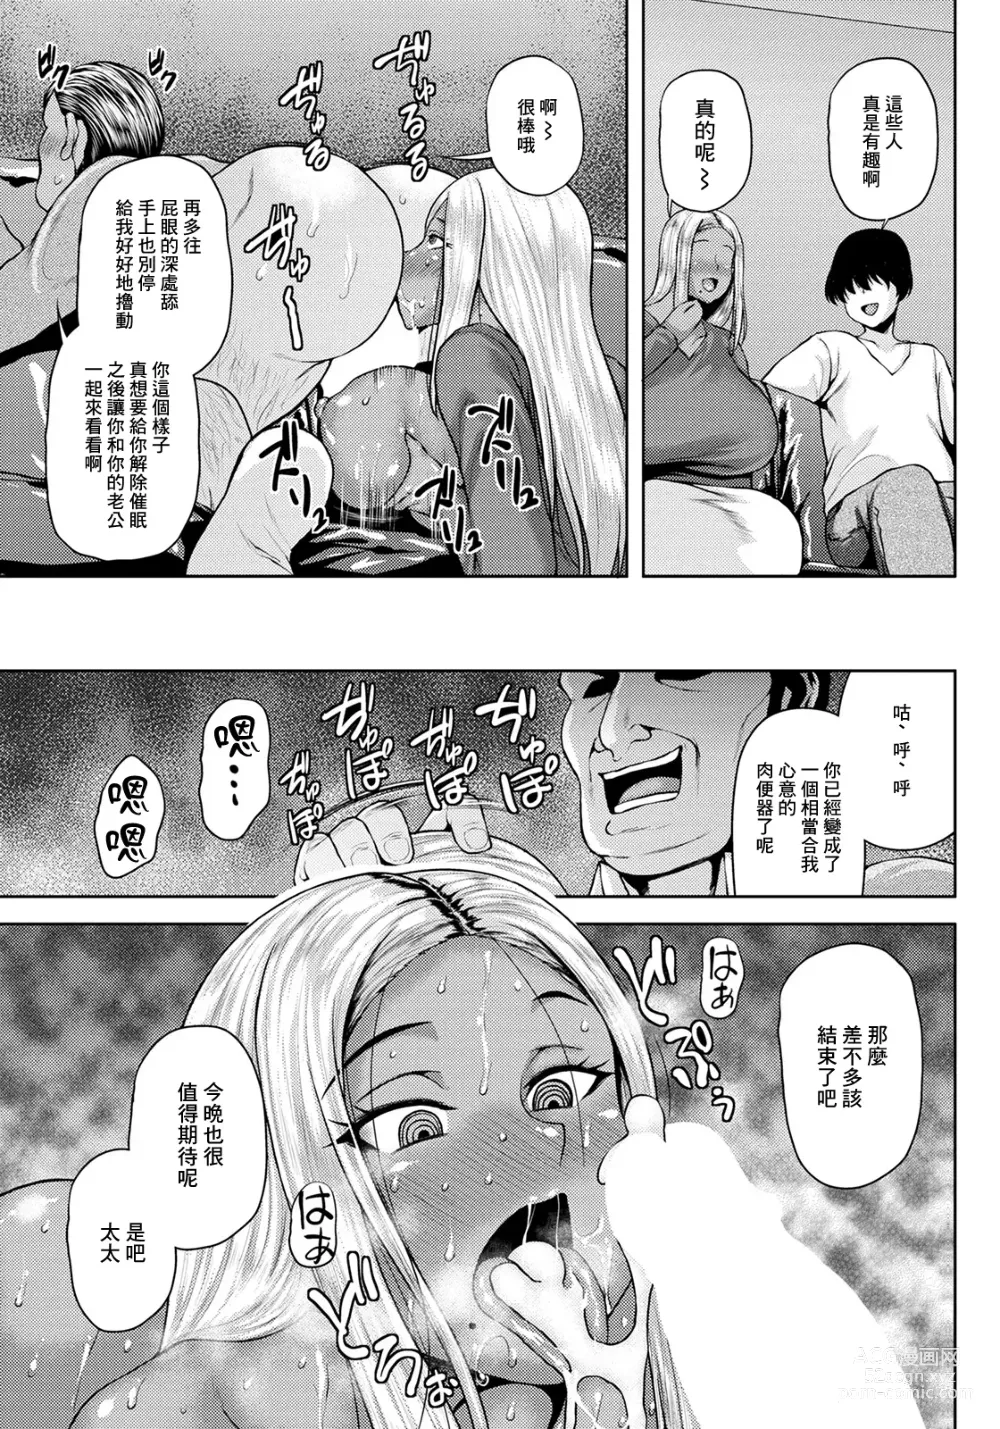 Page 13 of manga NTR Hypnosis Appli